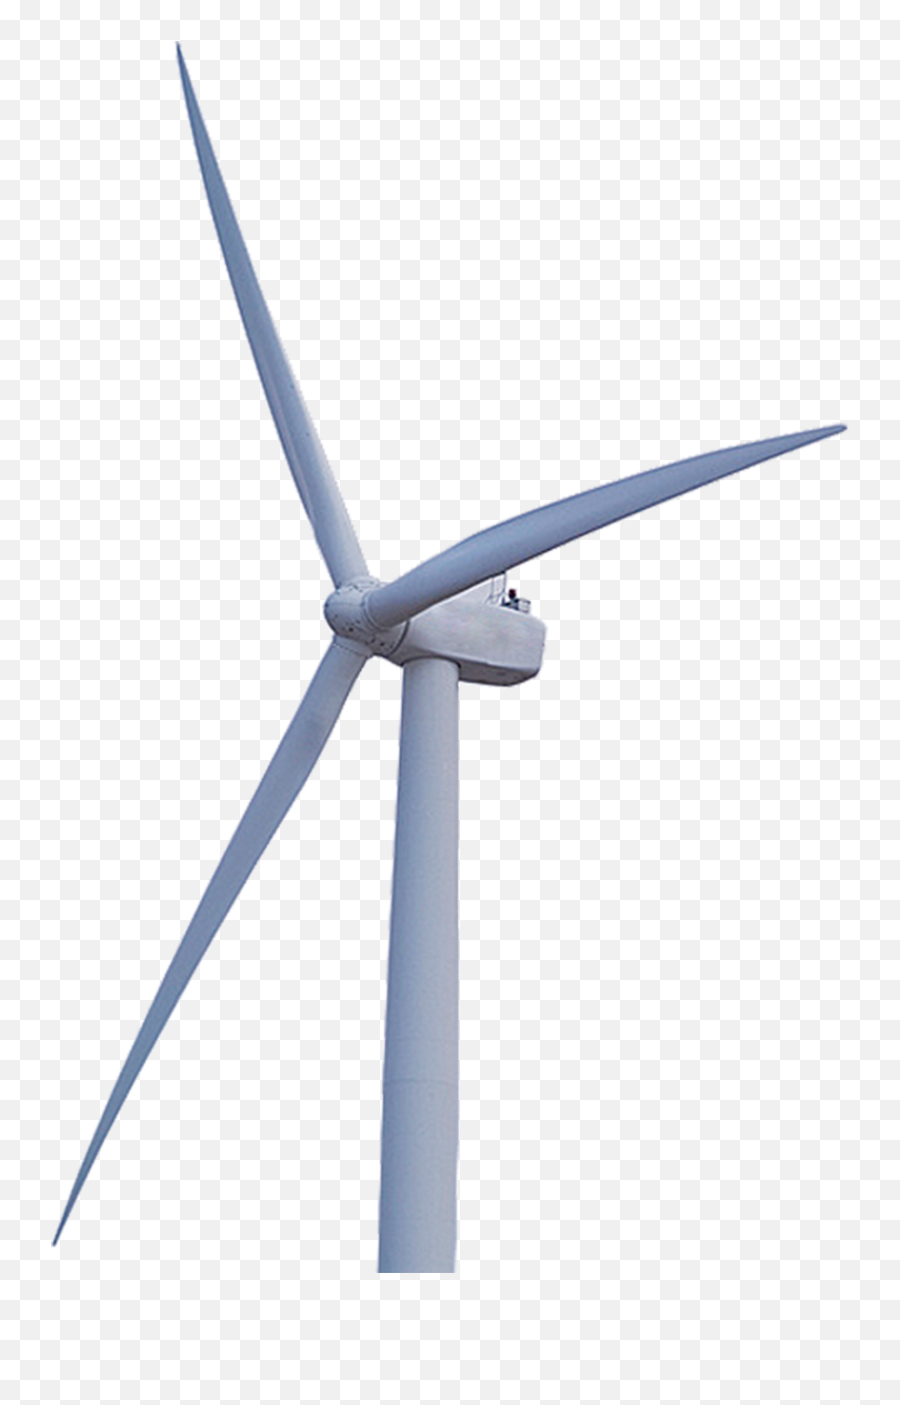 Windmill Png - Wind Turbine Clipart Full Size Clipart Wind Turbine,Wind Turbine Png